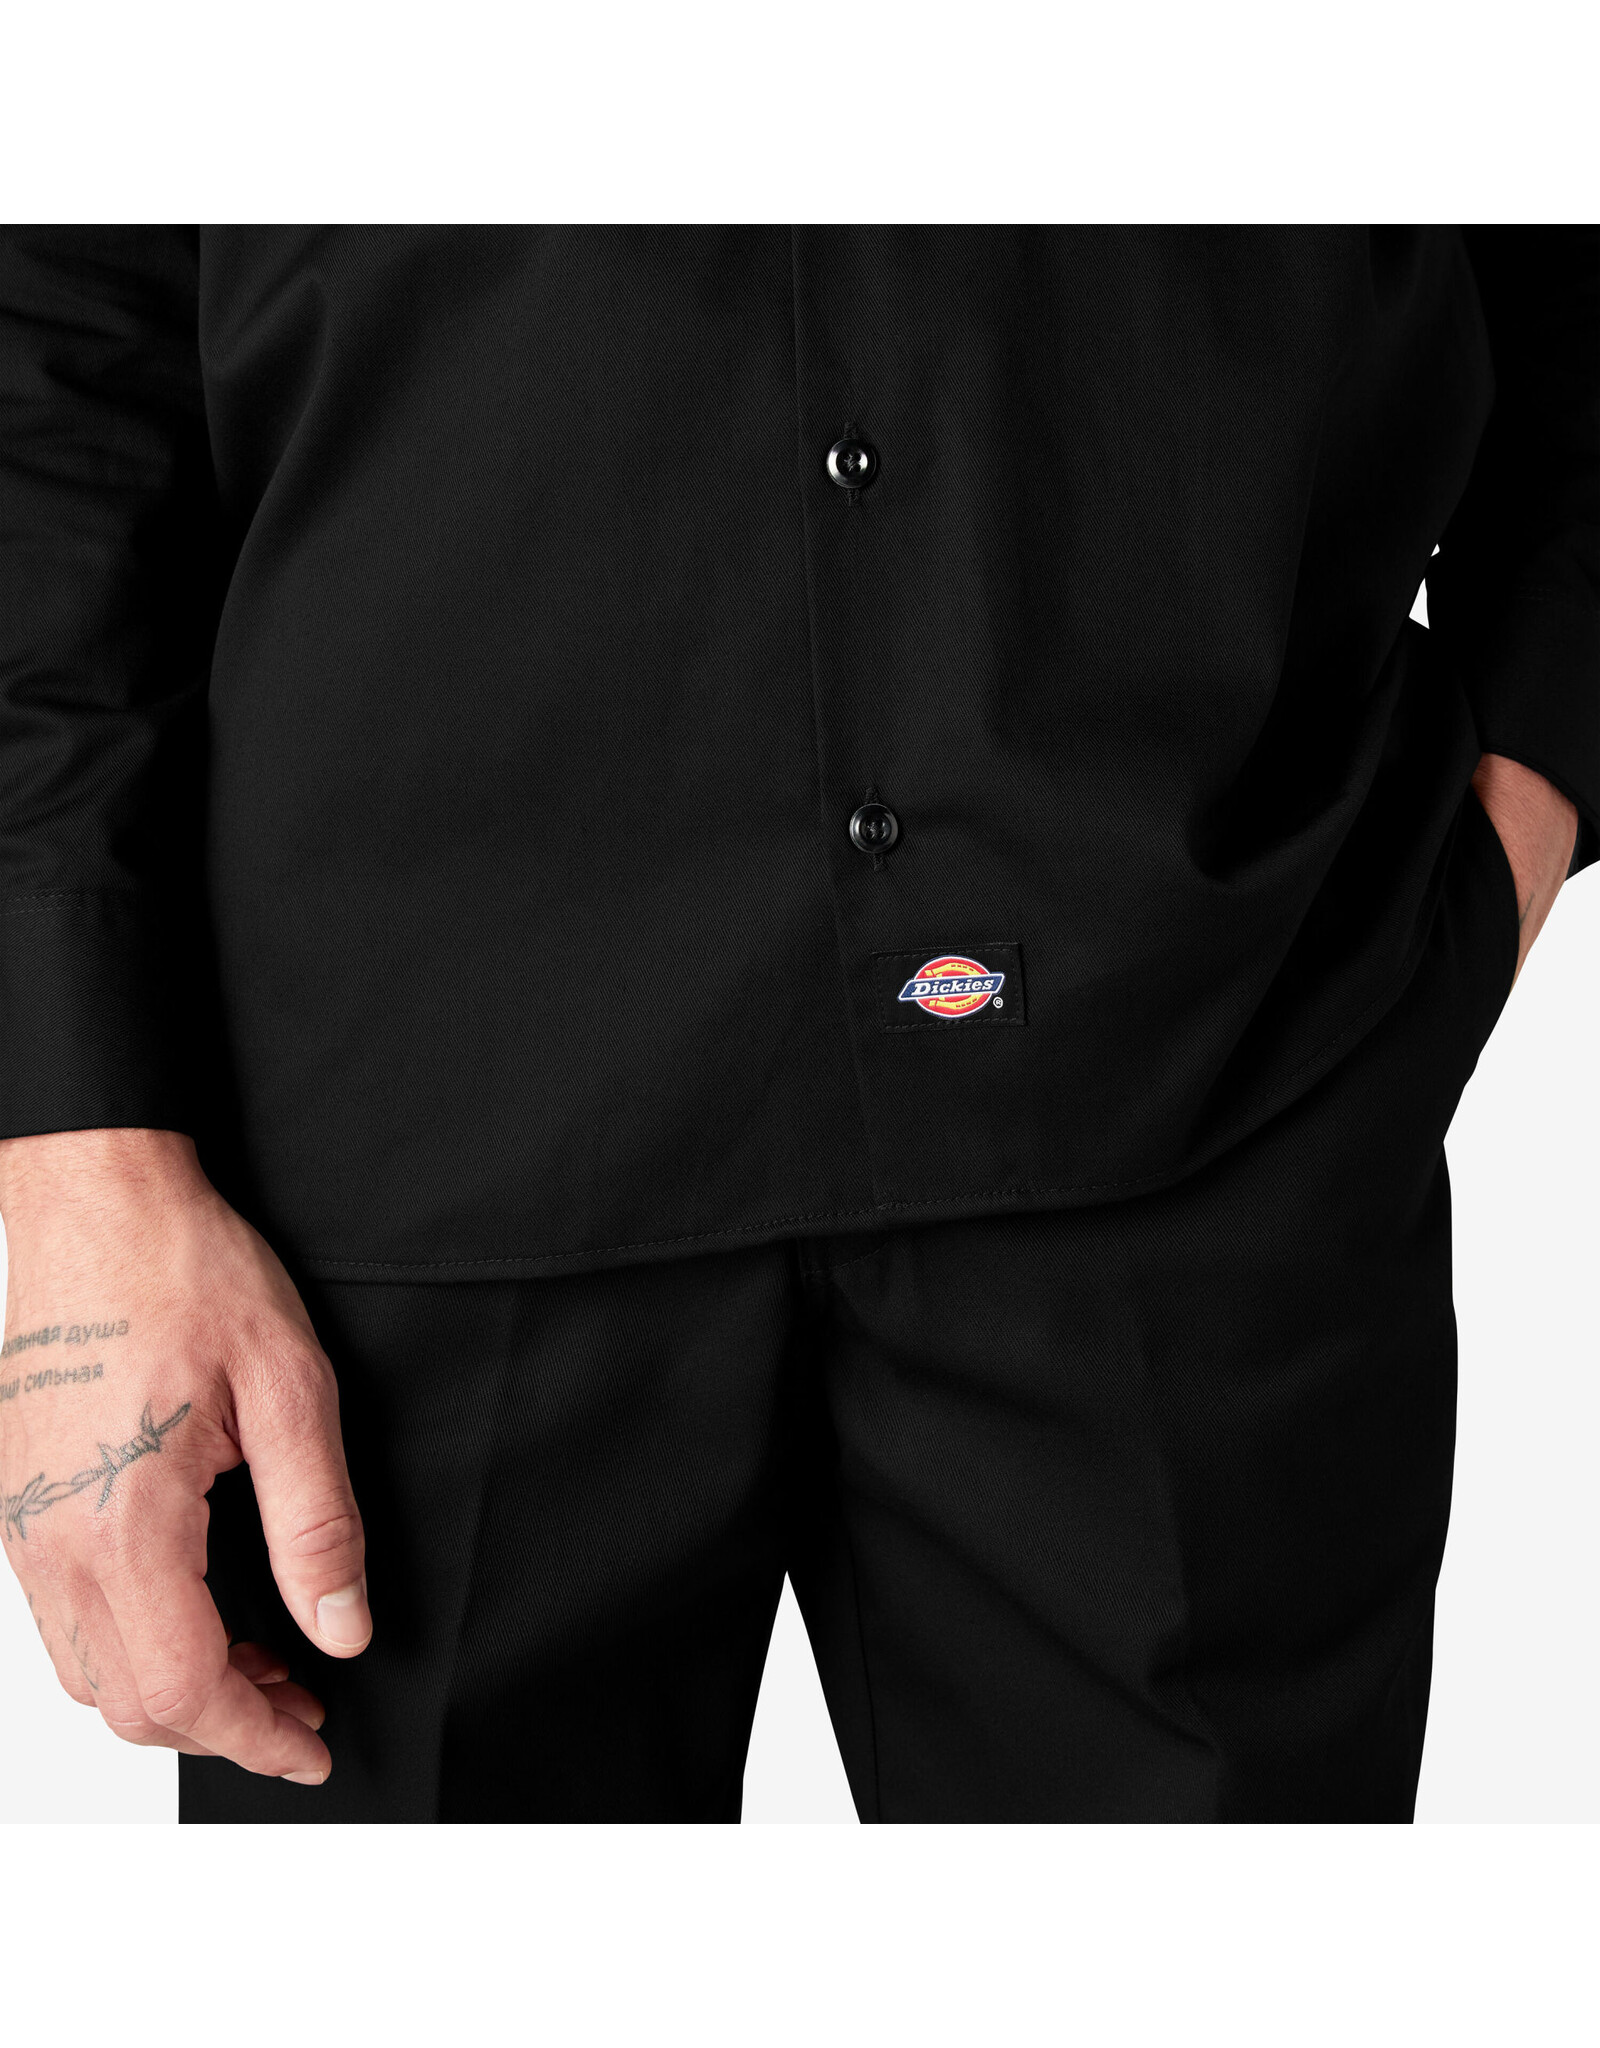 DICKIES Long Sleeve Work Shirt Black Original Fit - 574BK